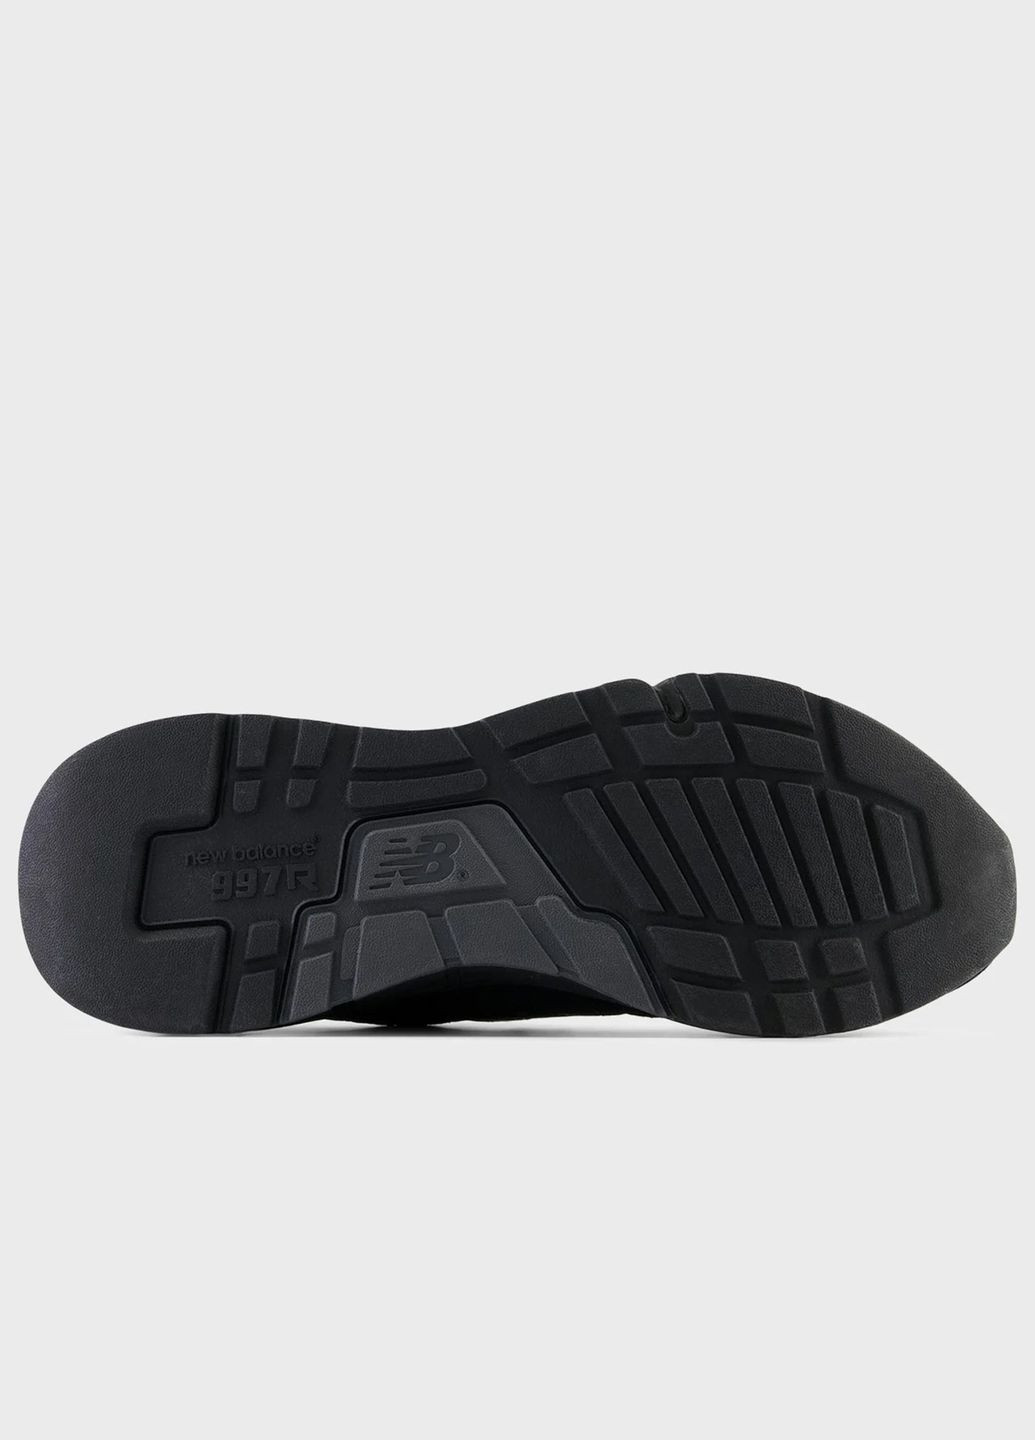 Черные всесезонные мужские кроссовки оригинал nb 997 u997rfb New Balance